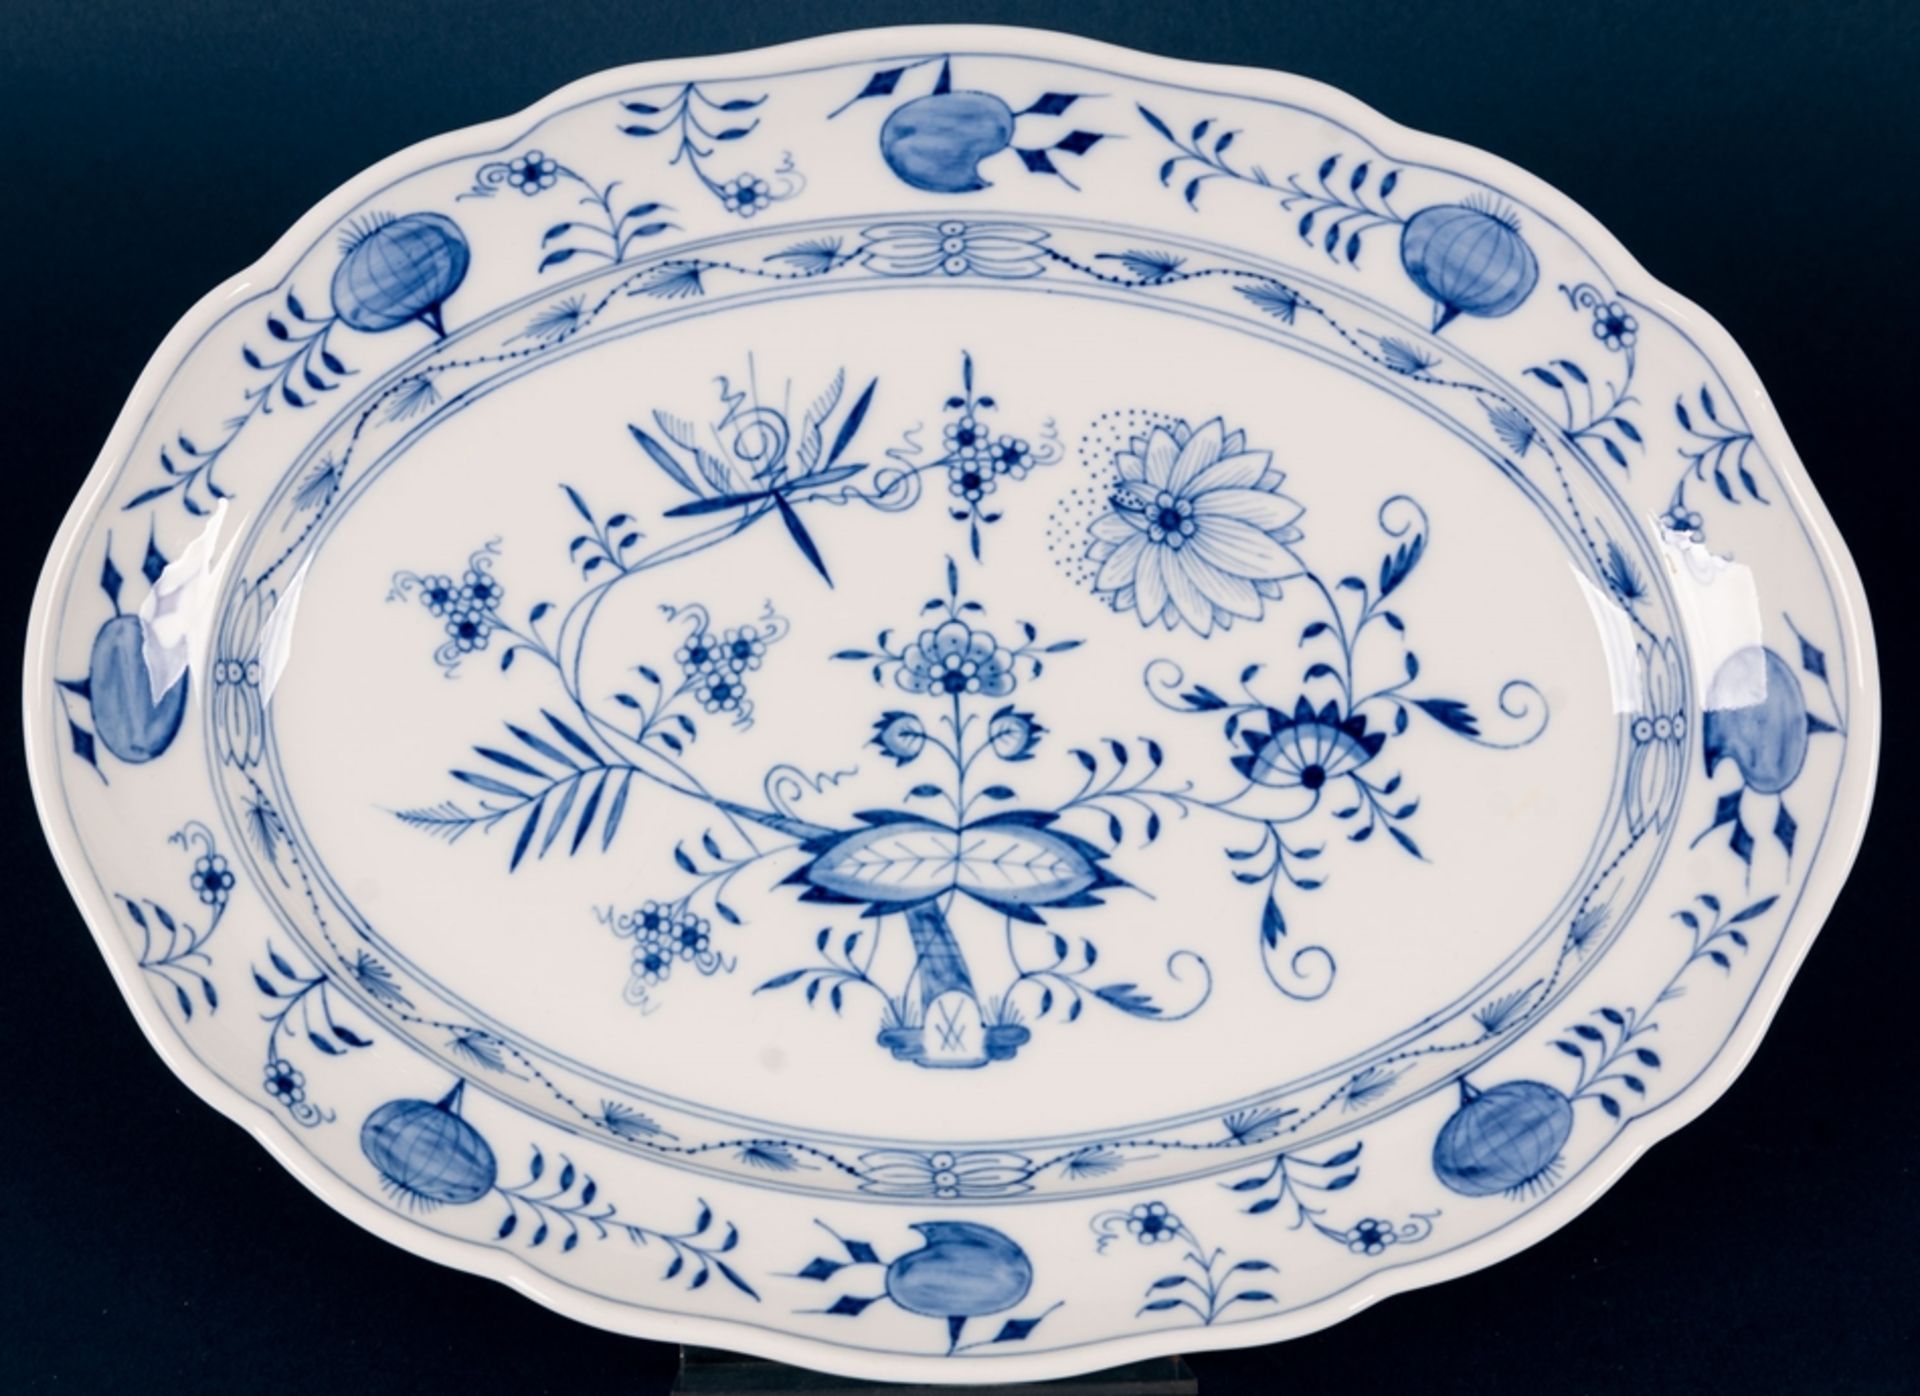 Große ovale Platte, Meissen,Schwertermarke, 1. Wahl, Weißporzellan mit blauem Zwiebelmuster-Dekor,